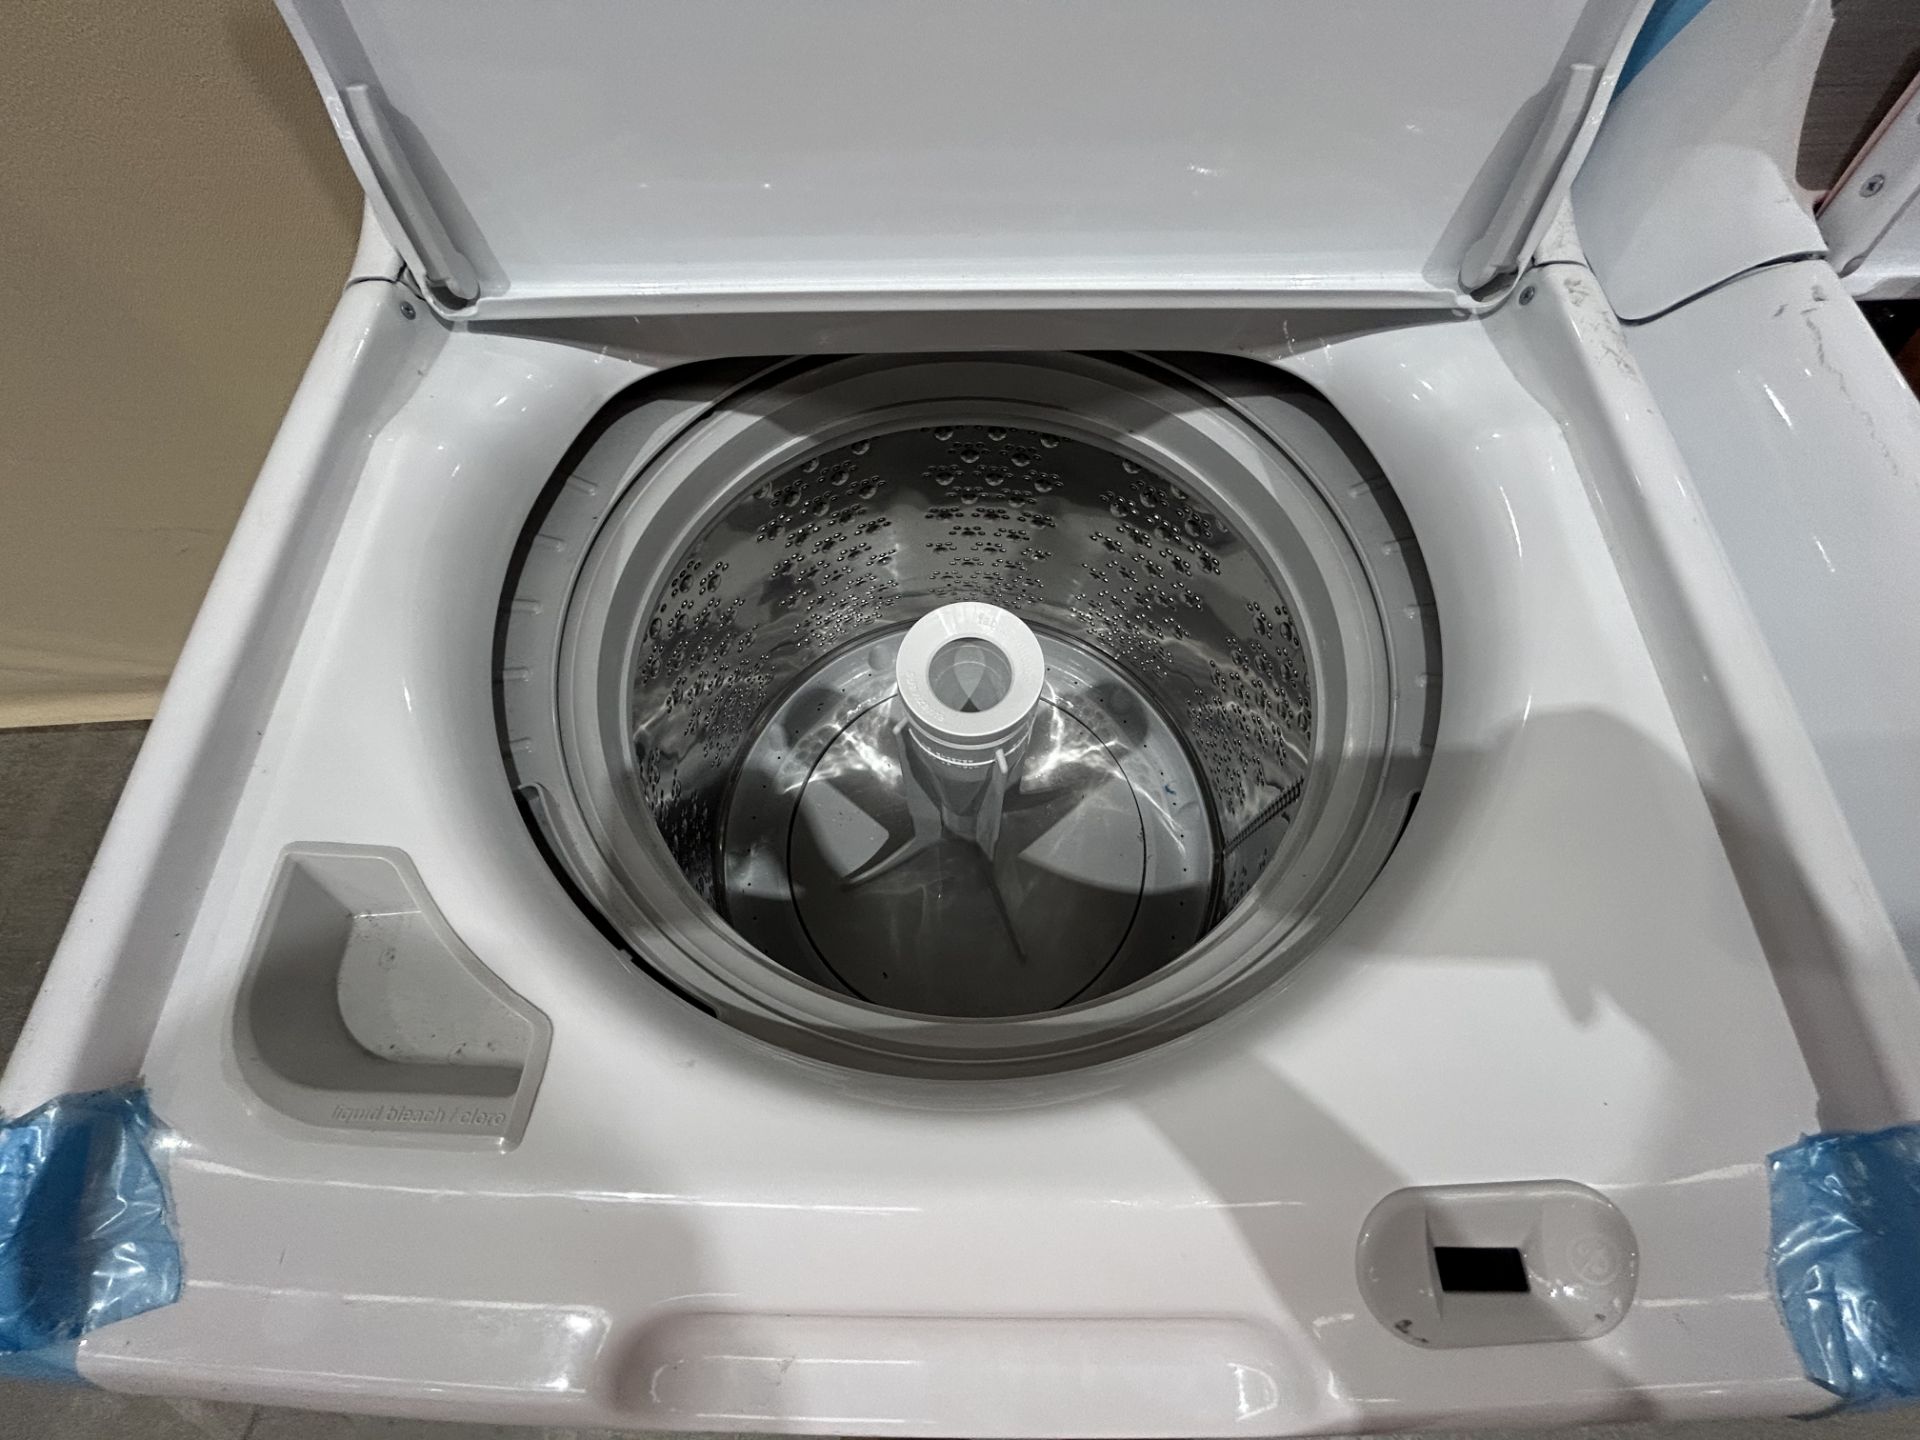 Lote de 2 lavadoras contiene: 1 Lavadora de 16 KG Marca MABE, Modelo LMA76112CBAB02, Serie S66192, - Image 4 of 8